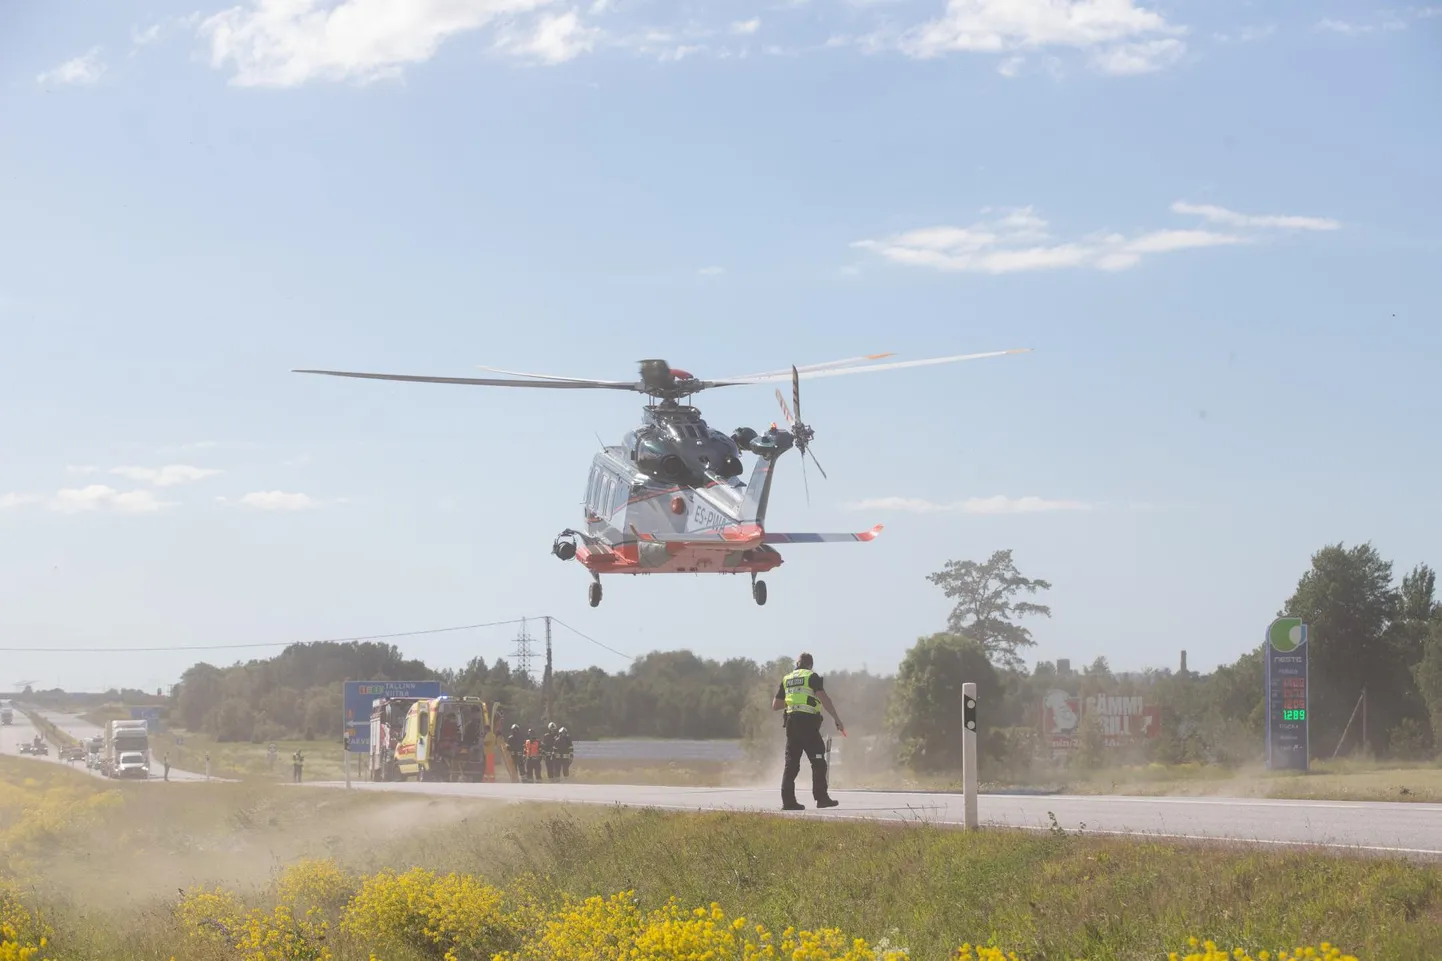 Полицейский спасательный вертолет на месте происшествия в Вирумаа, недалеко от Хальяла. Вертолет – самый быстрый способ доставить пострадавшего в больницу. Однако из-за сокращения госбюджета вертолет не сможет вылететь ночью с уведомлением за пятнадцать минут.